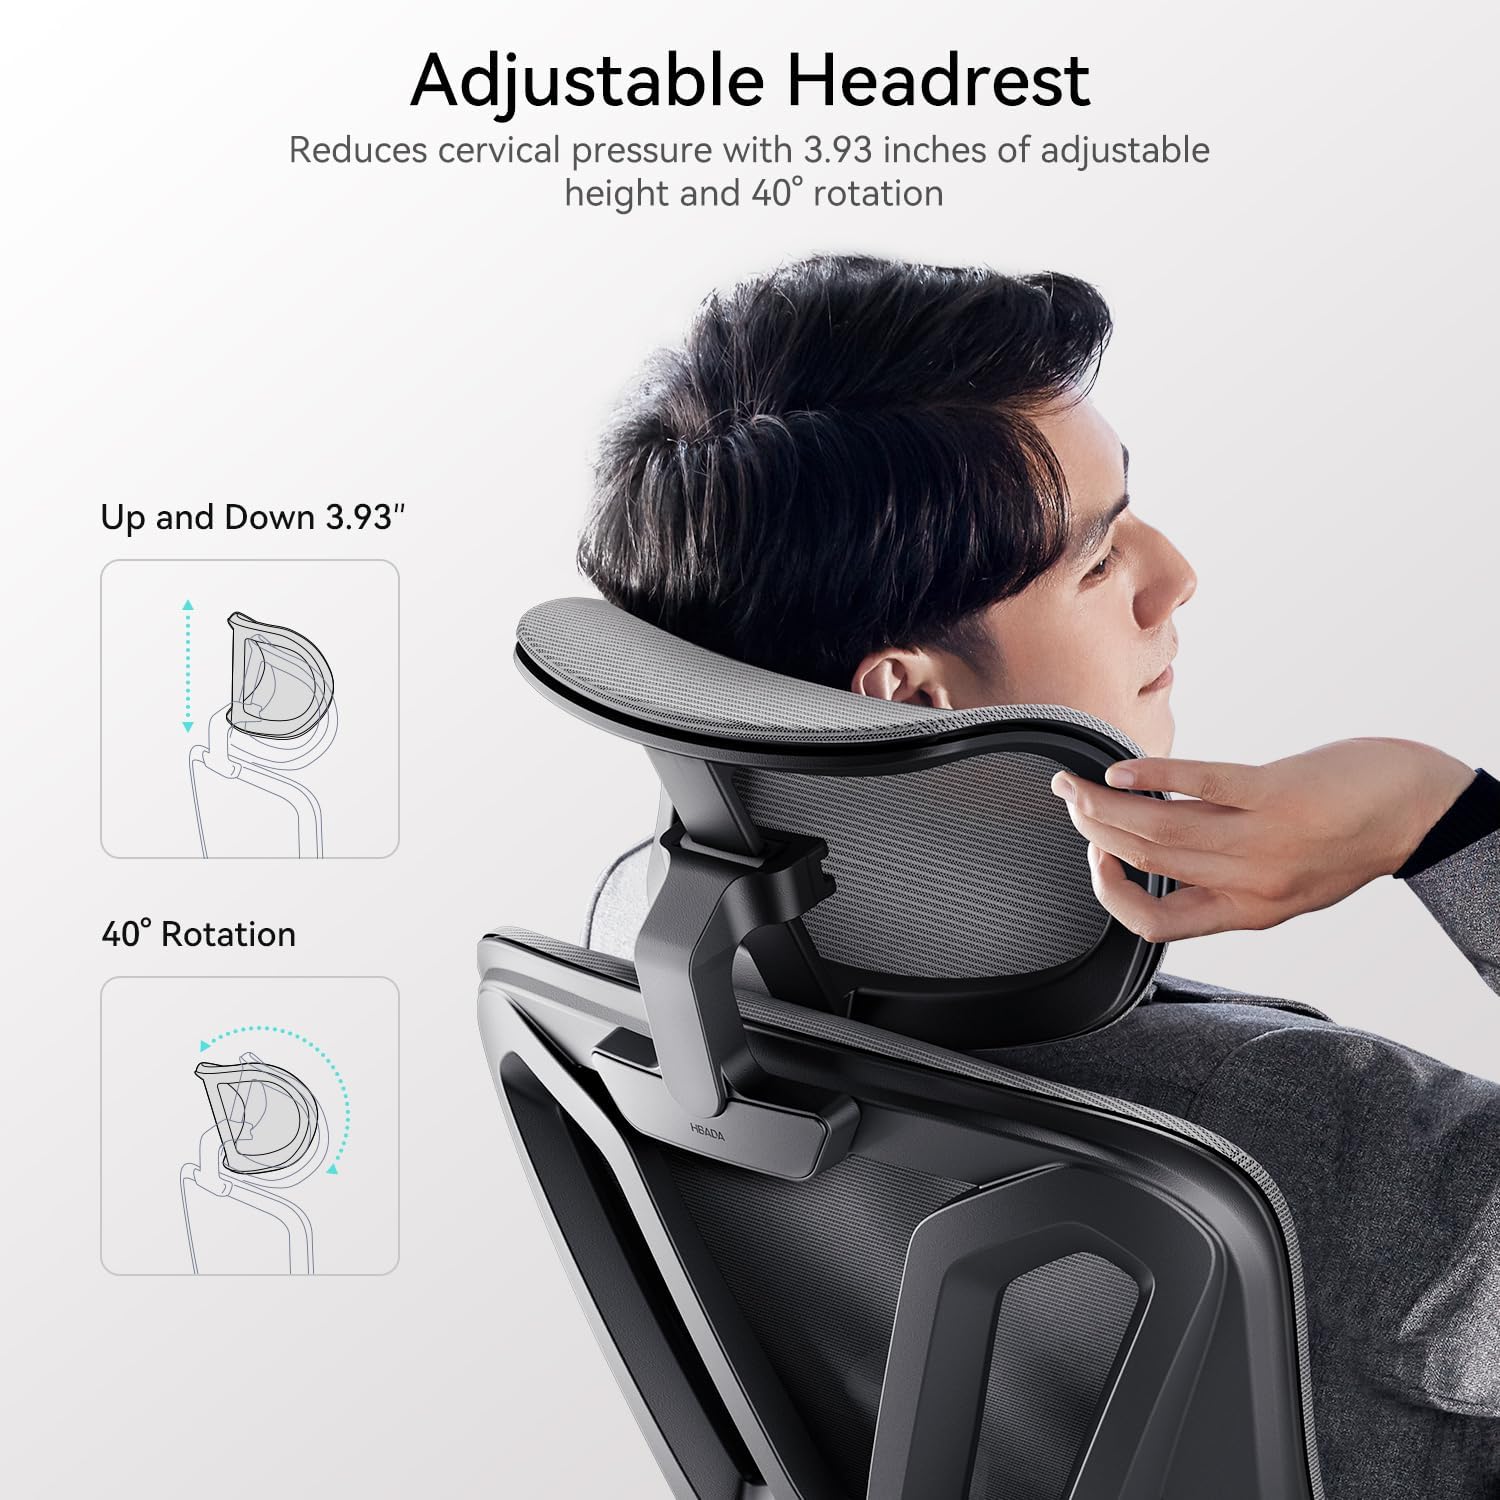 Silla de oficina ergonómica, silla de escritorio con soporte lumbar ajustable y